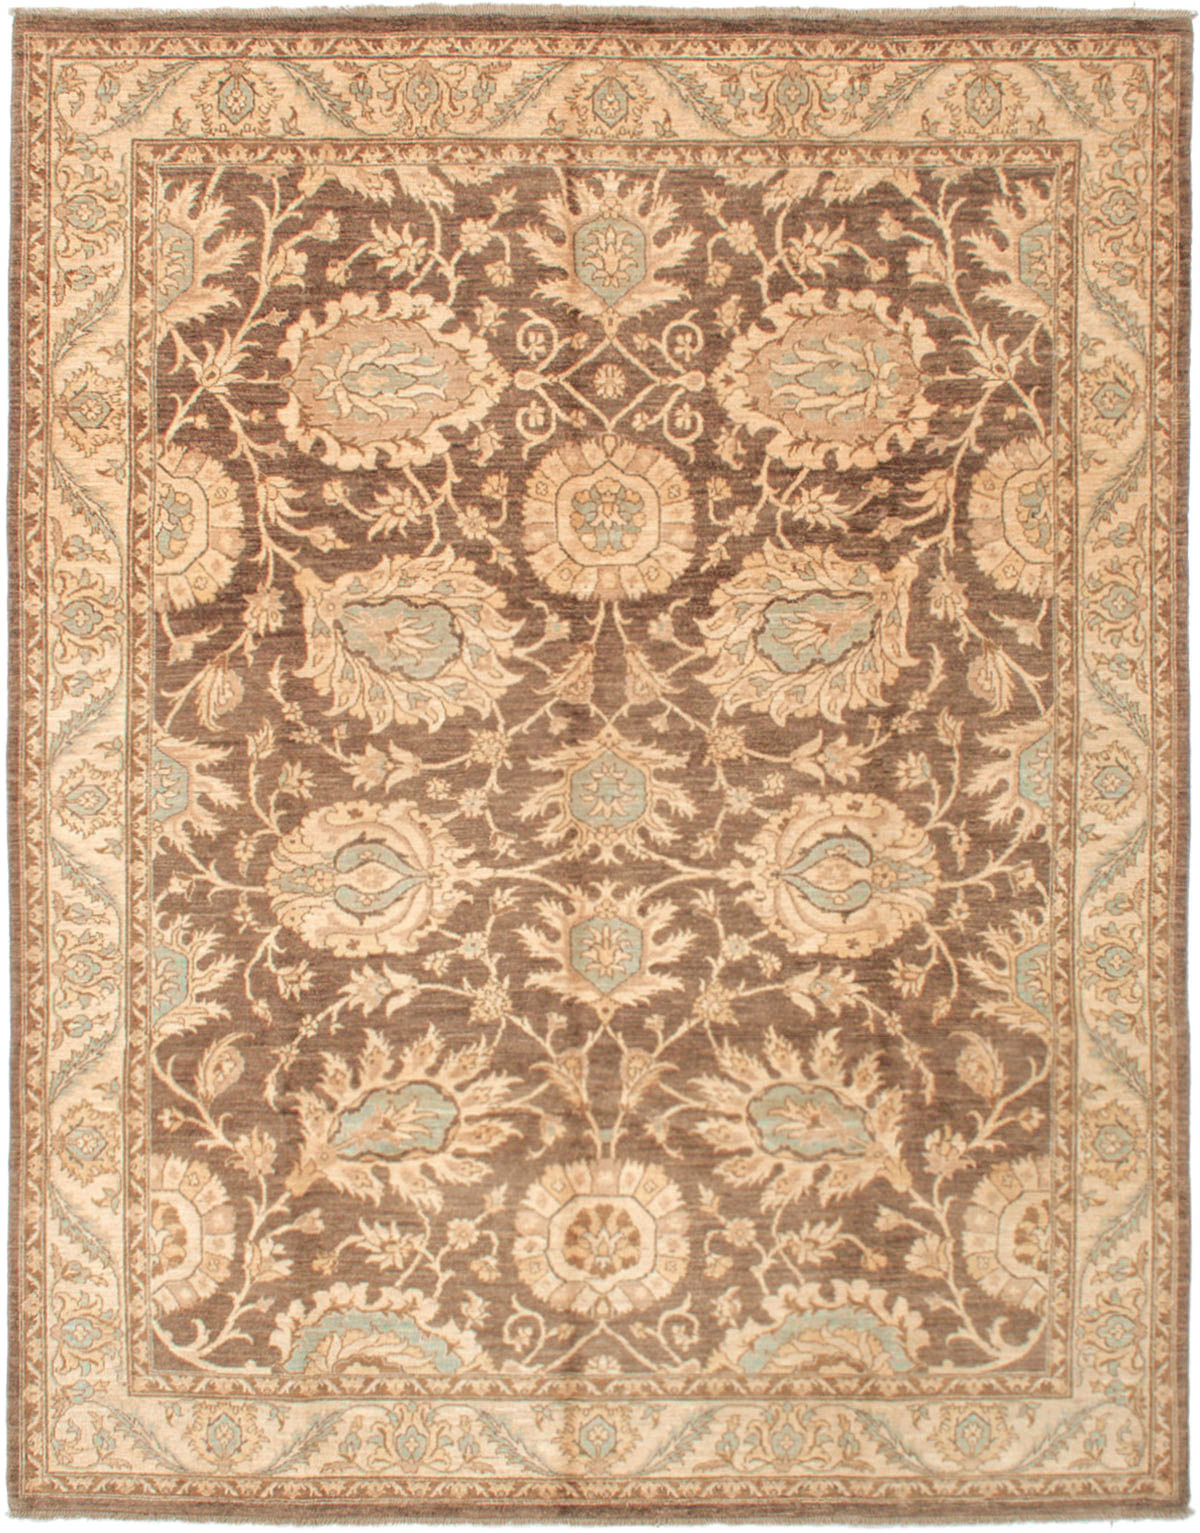 Hand-knotted Peshawar Finest Dark Brown Wool Rug 8'2" x 10'3" Size: 8'2" x 10'3"  